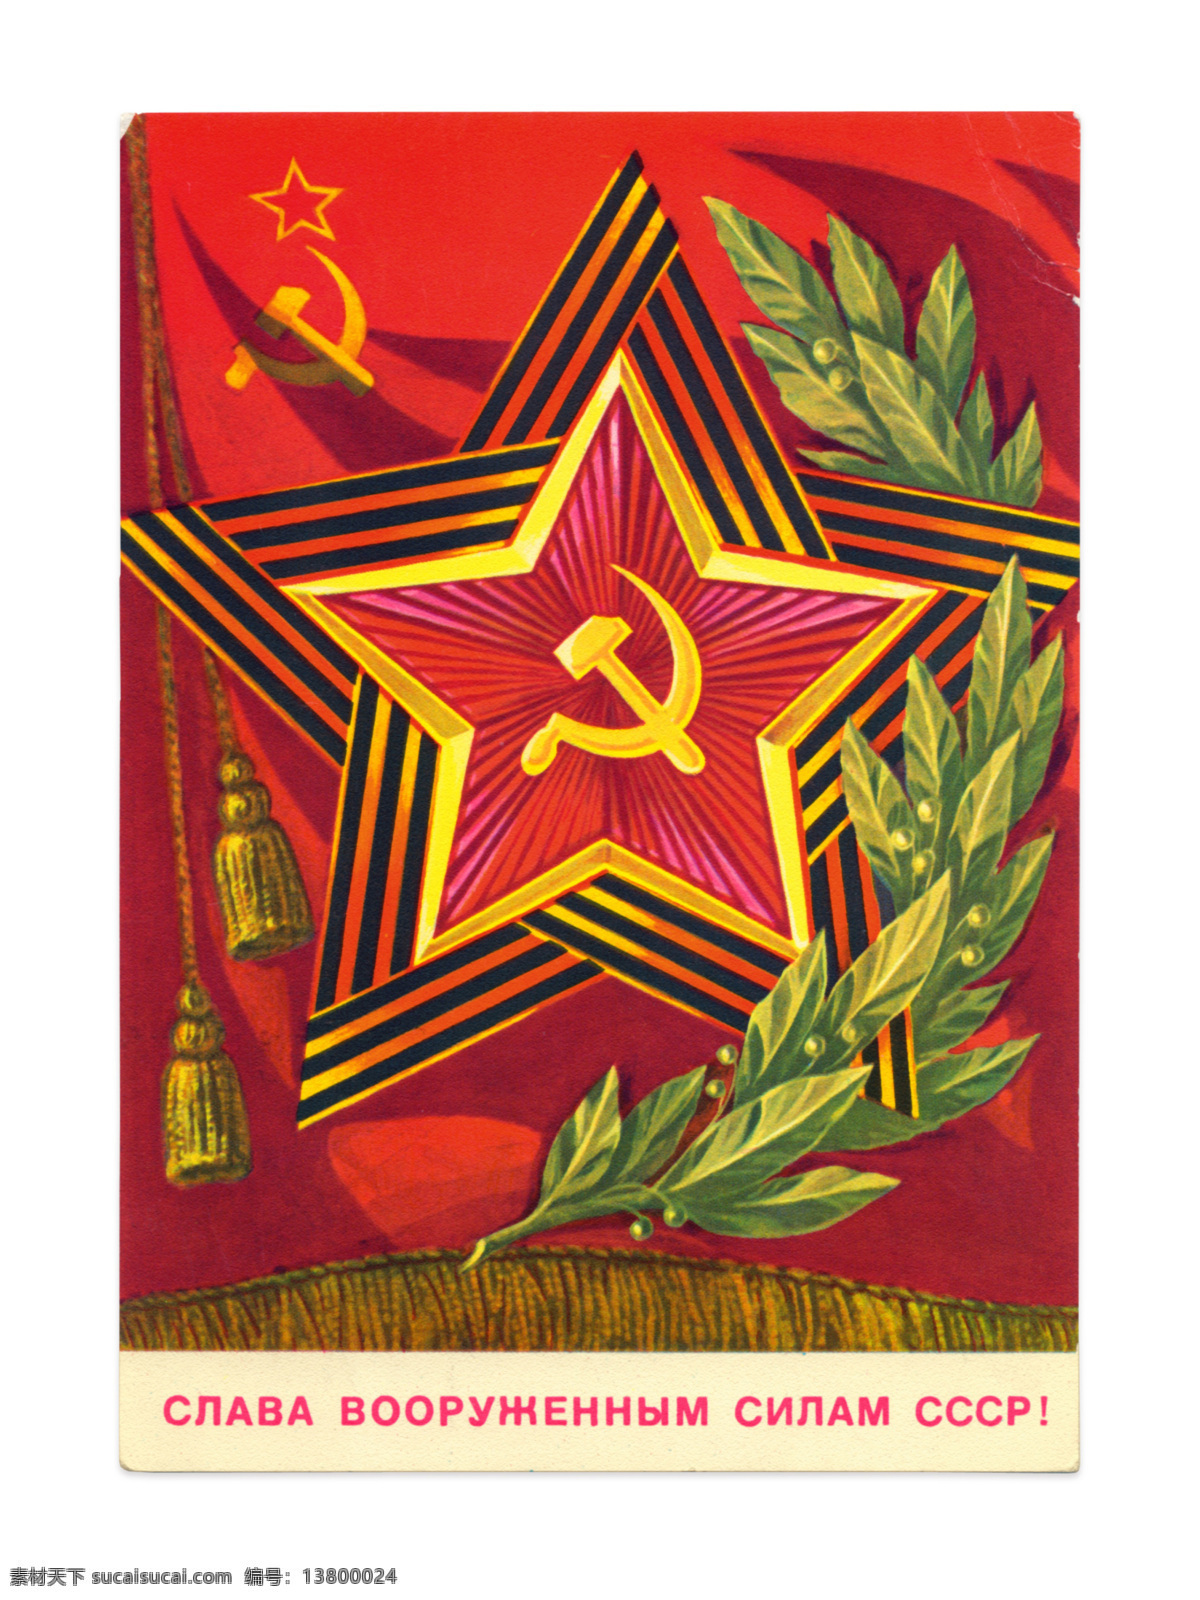 苏联红军 旗帜 军事主题 徽章 五角星 党旗 军事武器 现代科技